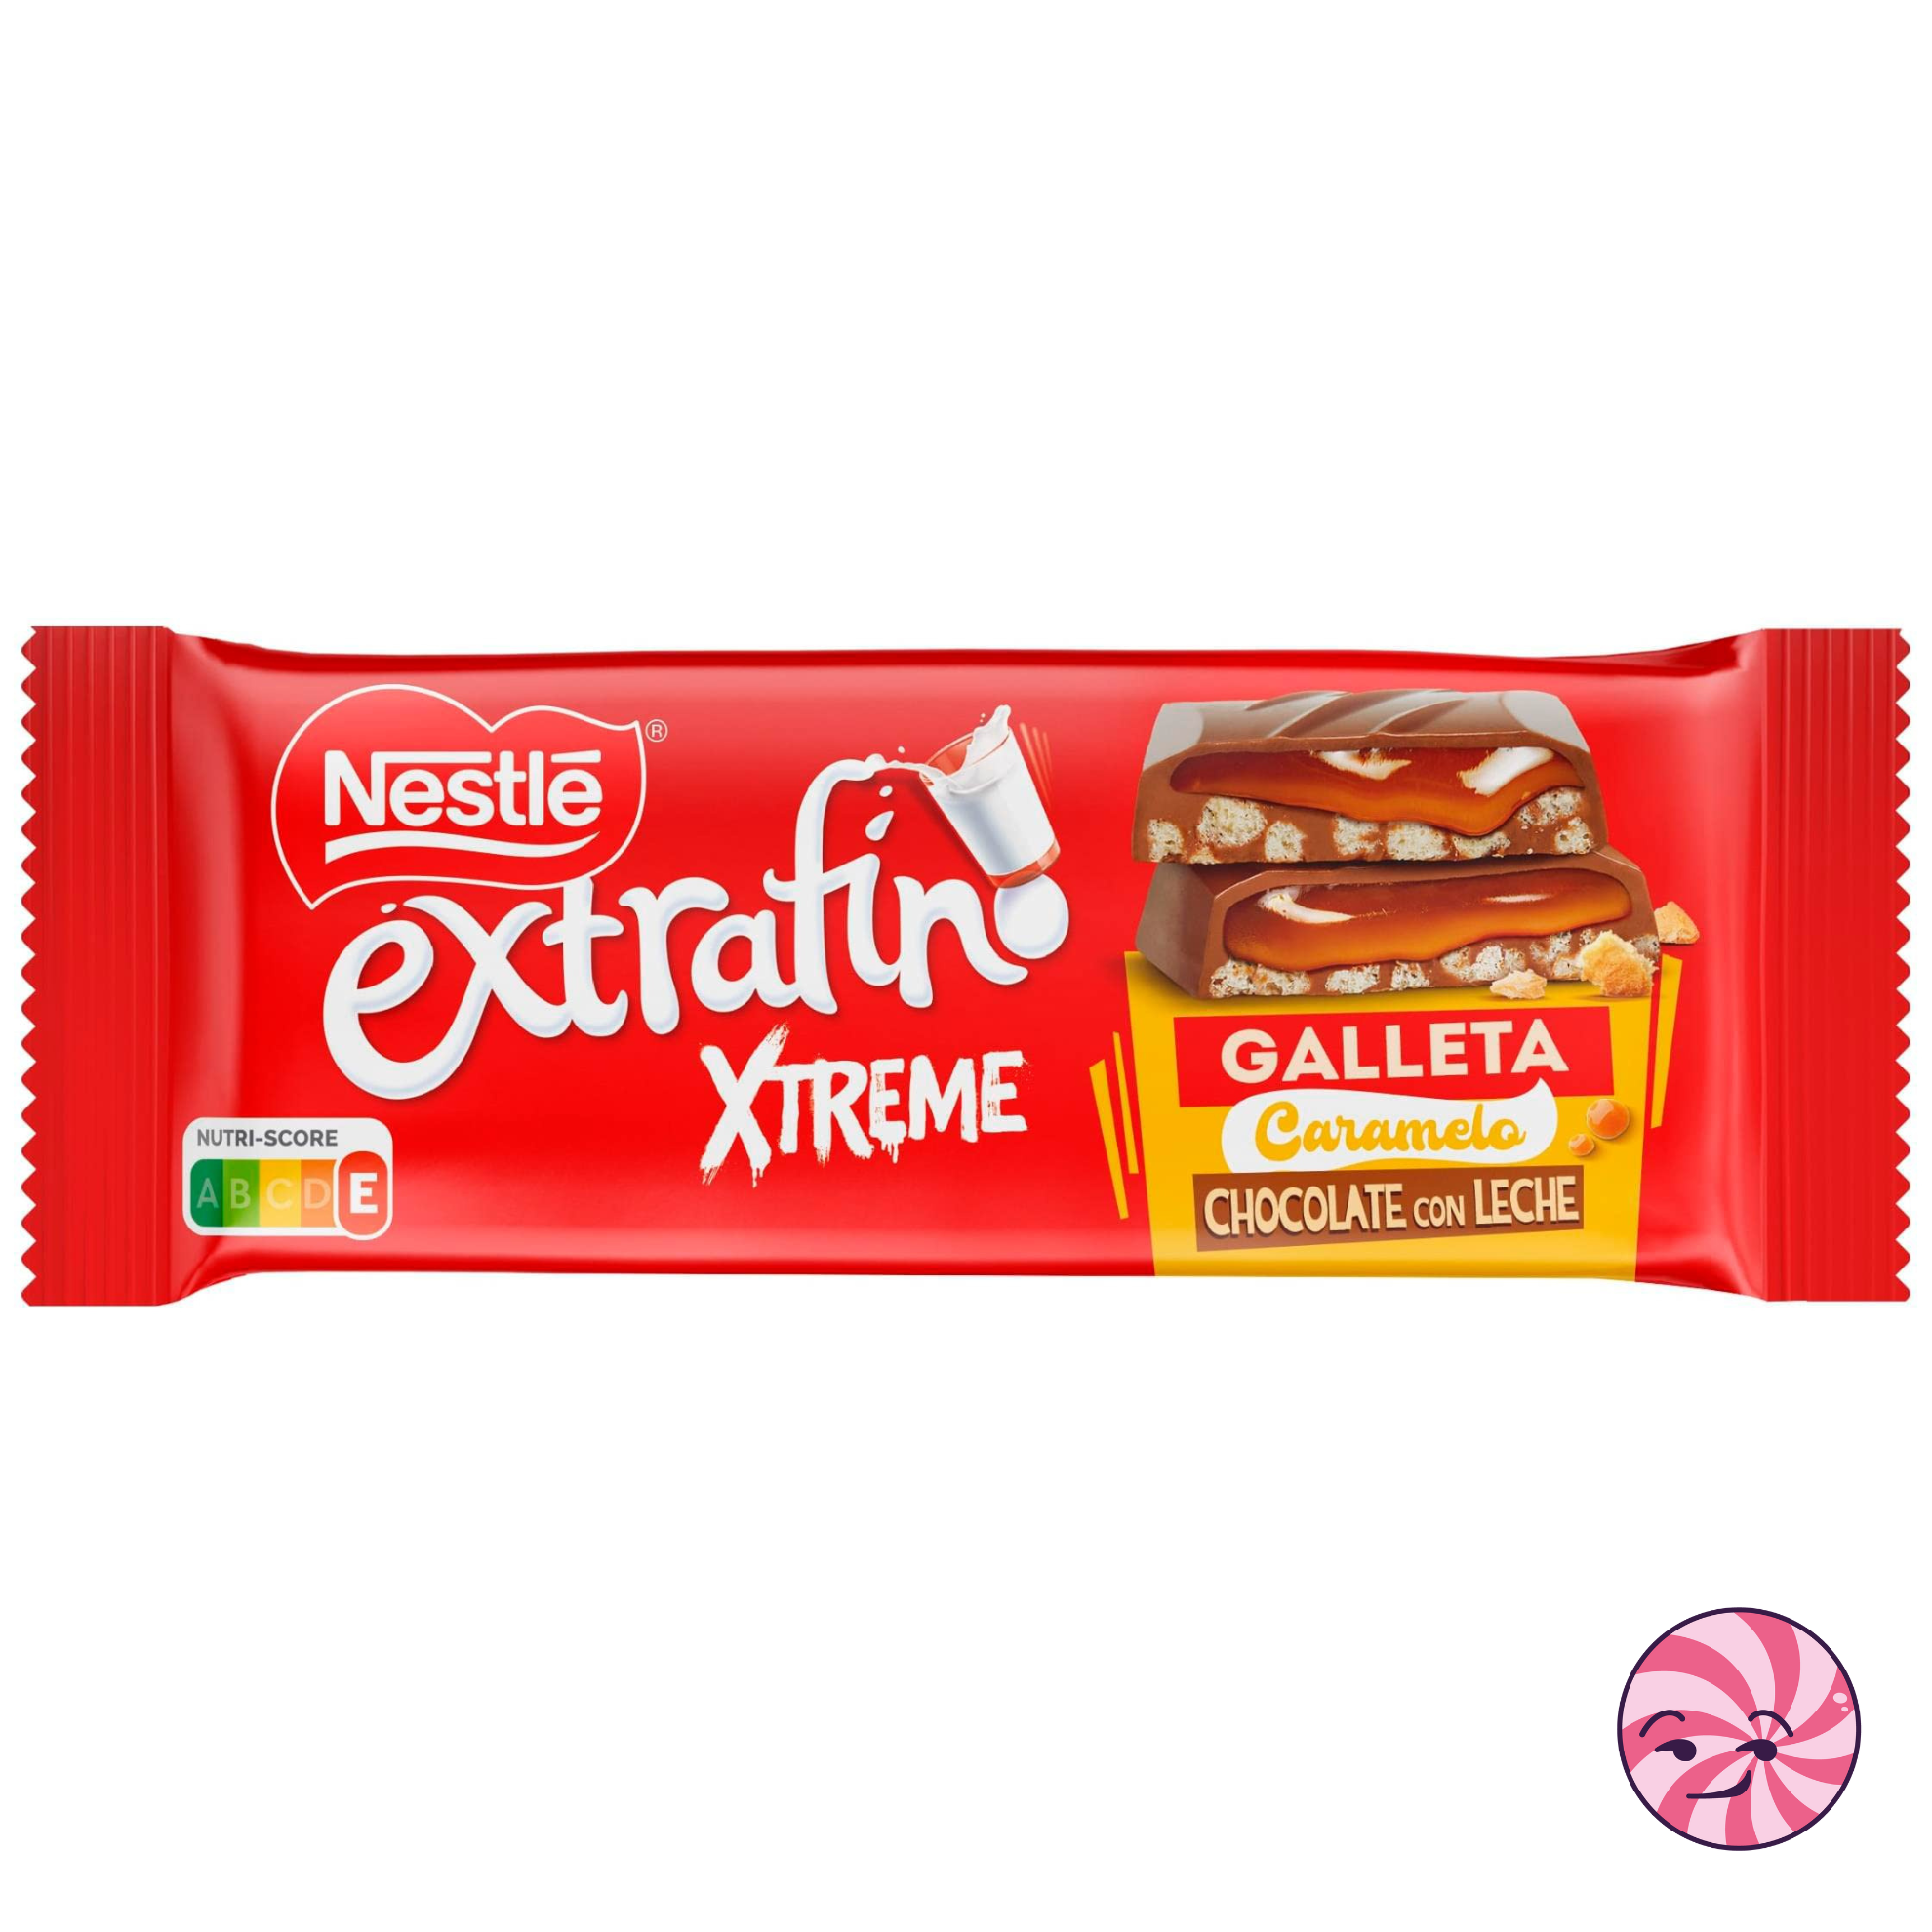 Nestle extrafino Xtreme galleta